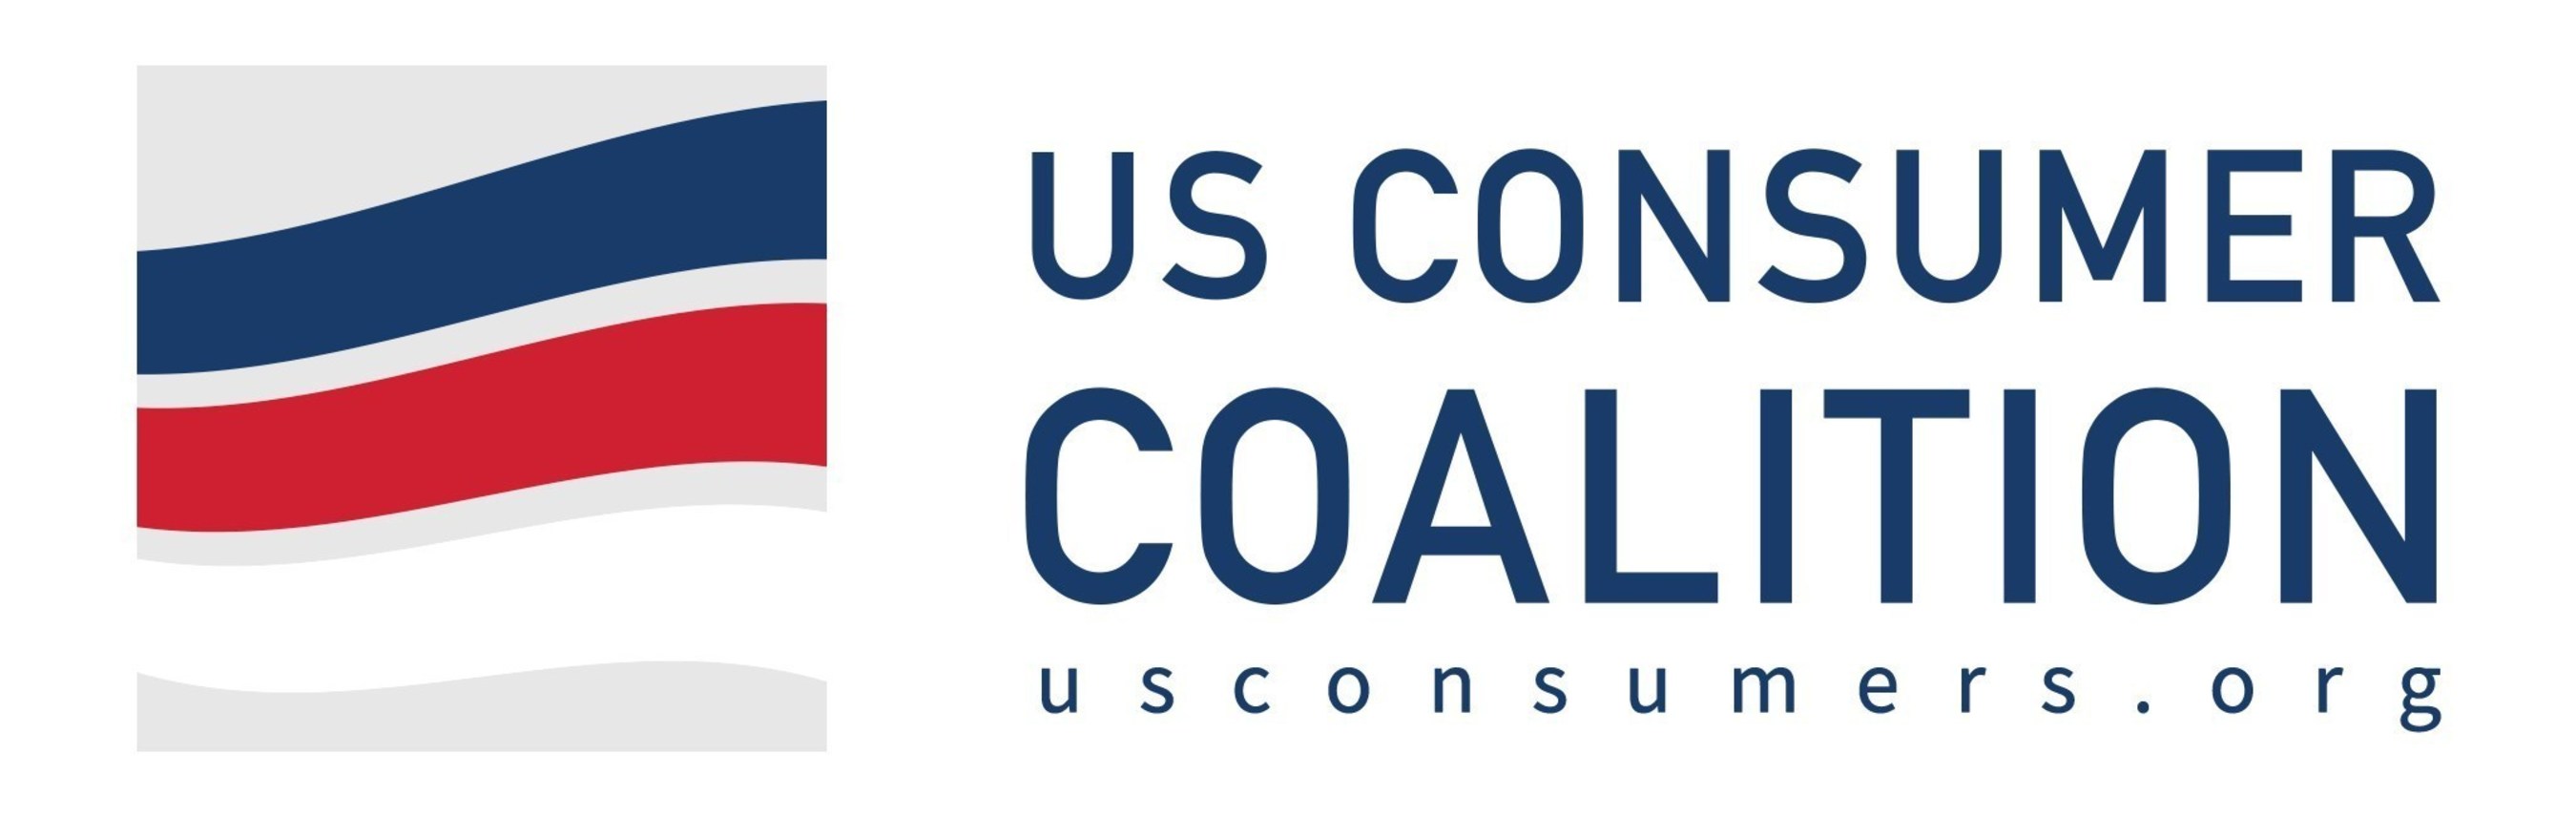 USCC Logo w/ website